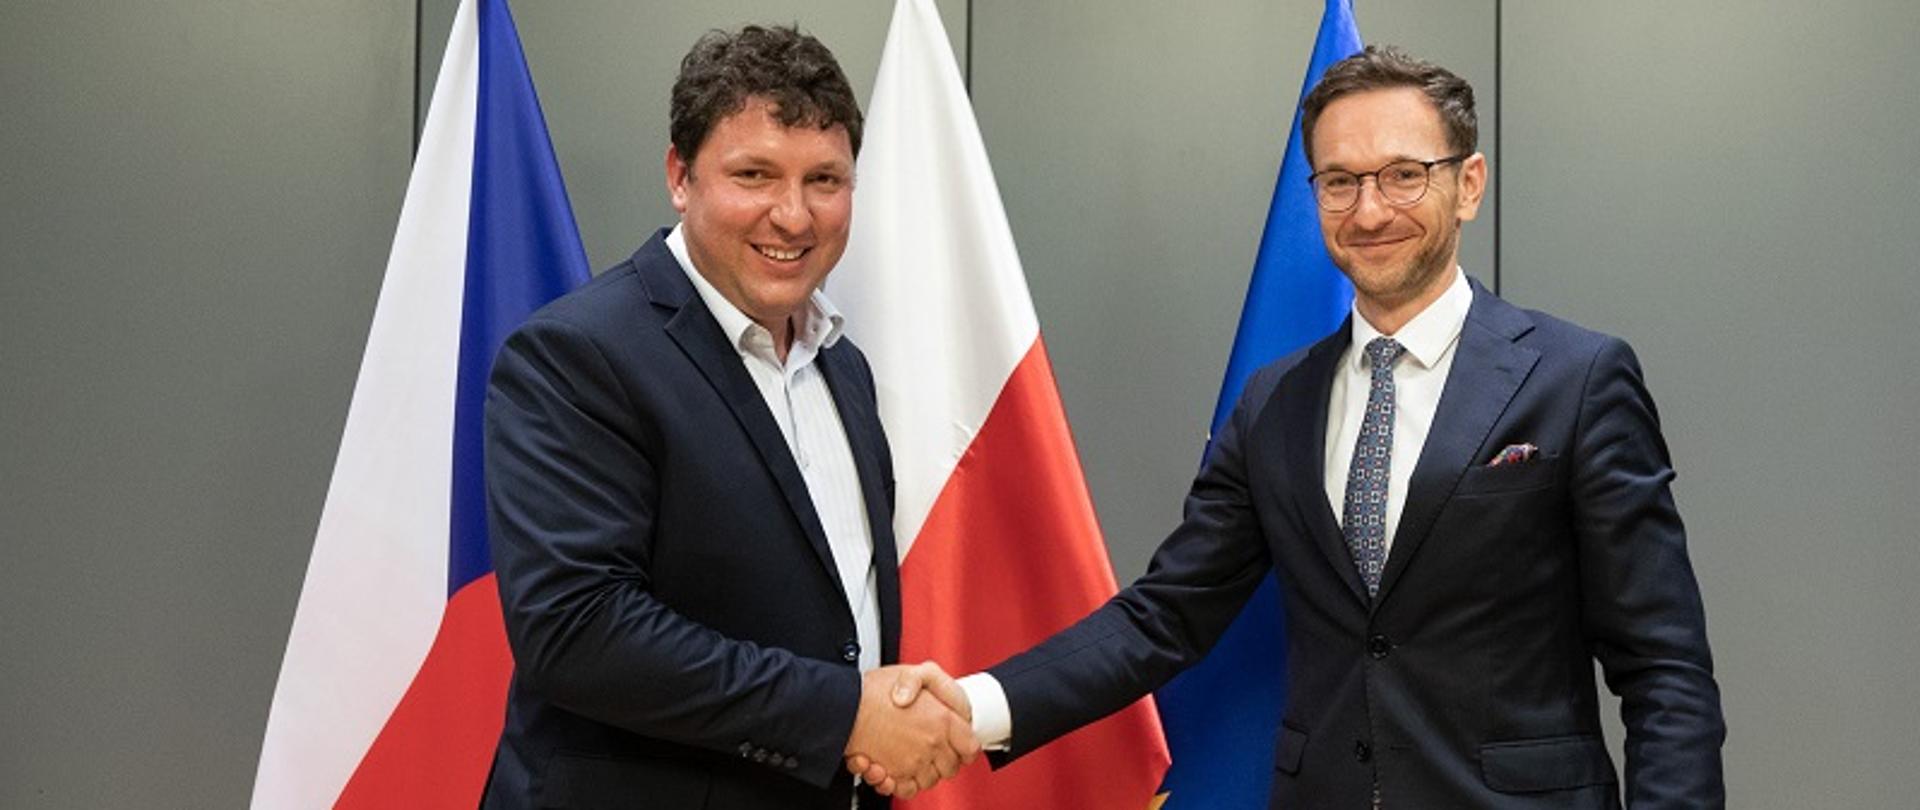 Ministrowie Marian Piecha i Waldemar Buda podają sobie dłonie na tle flag Polski i Czech